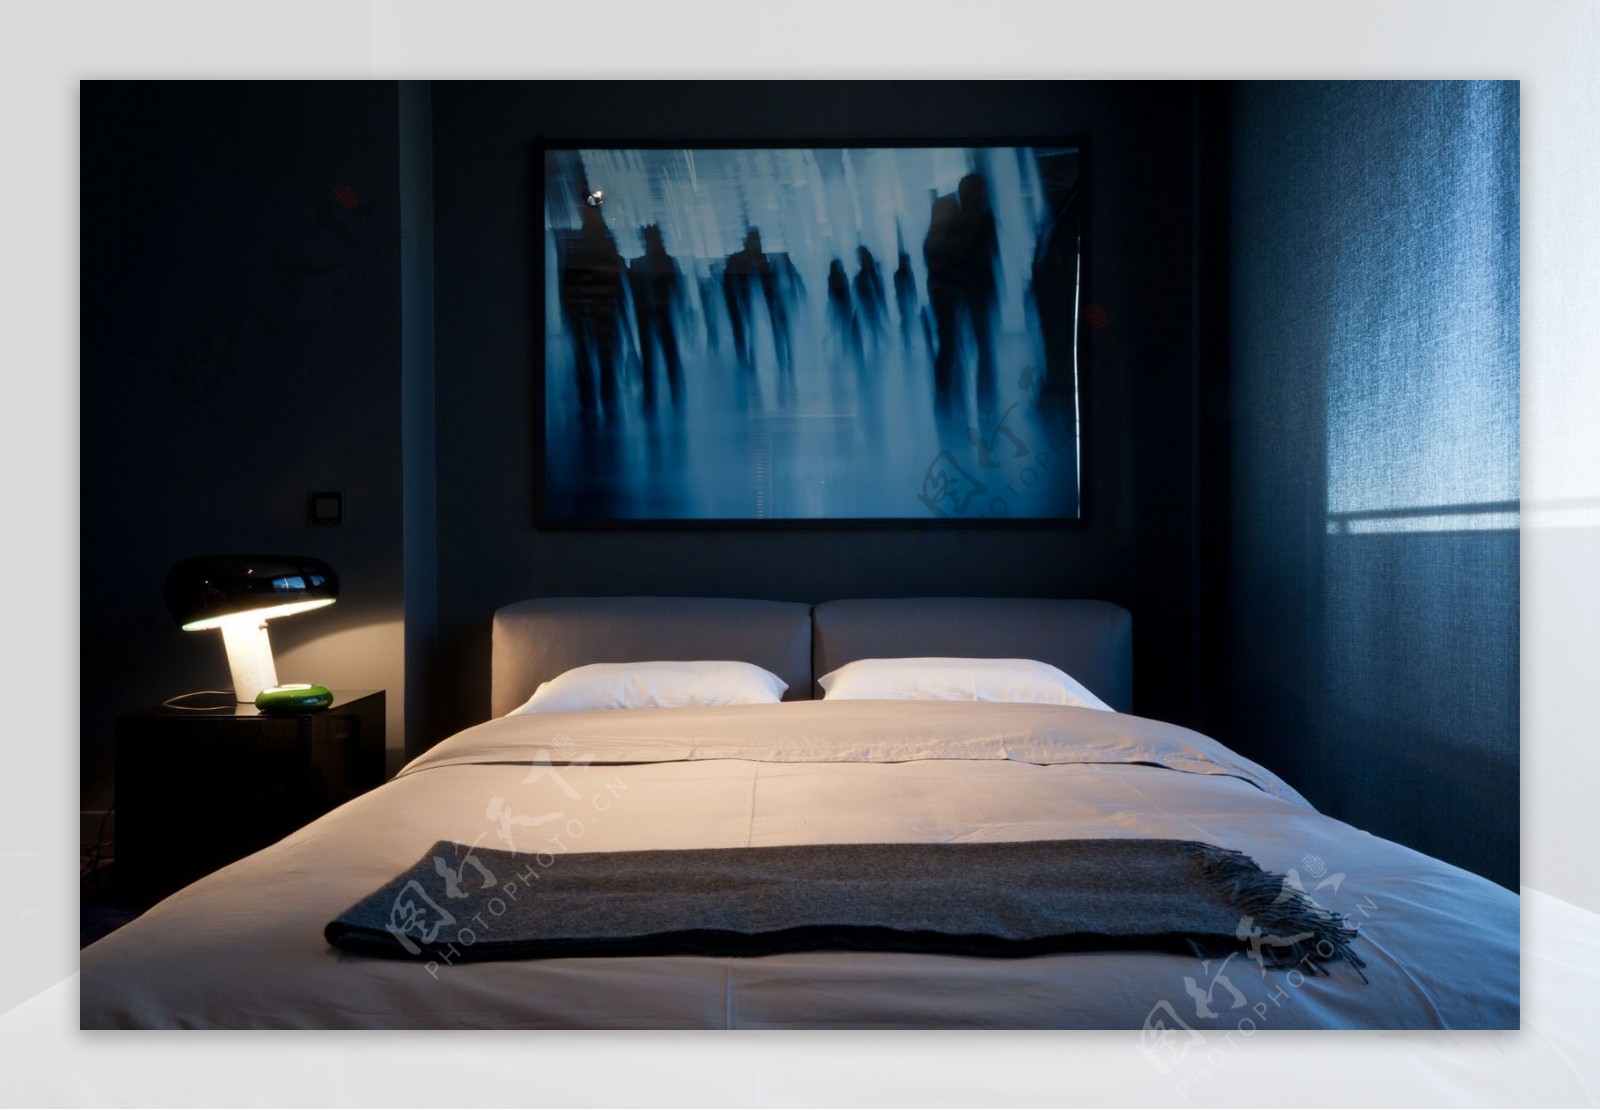 现代时尚卧室黑色花纹挂画室内装修效果图